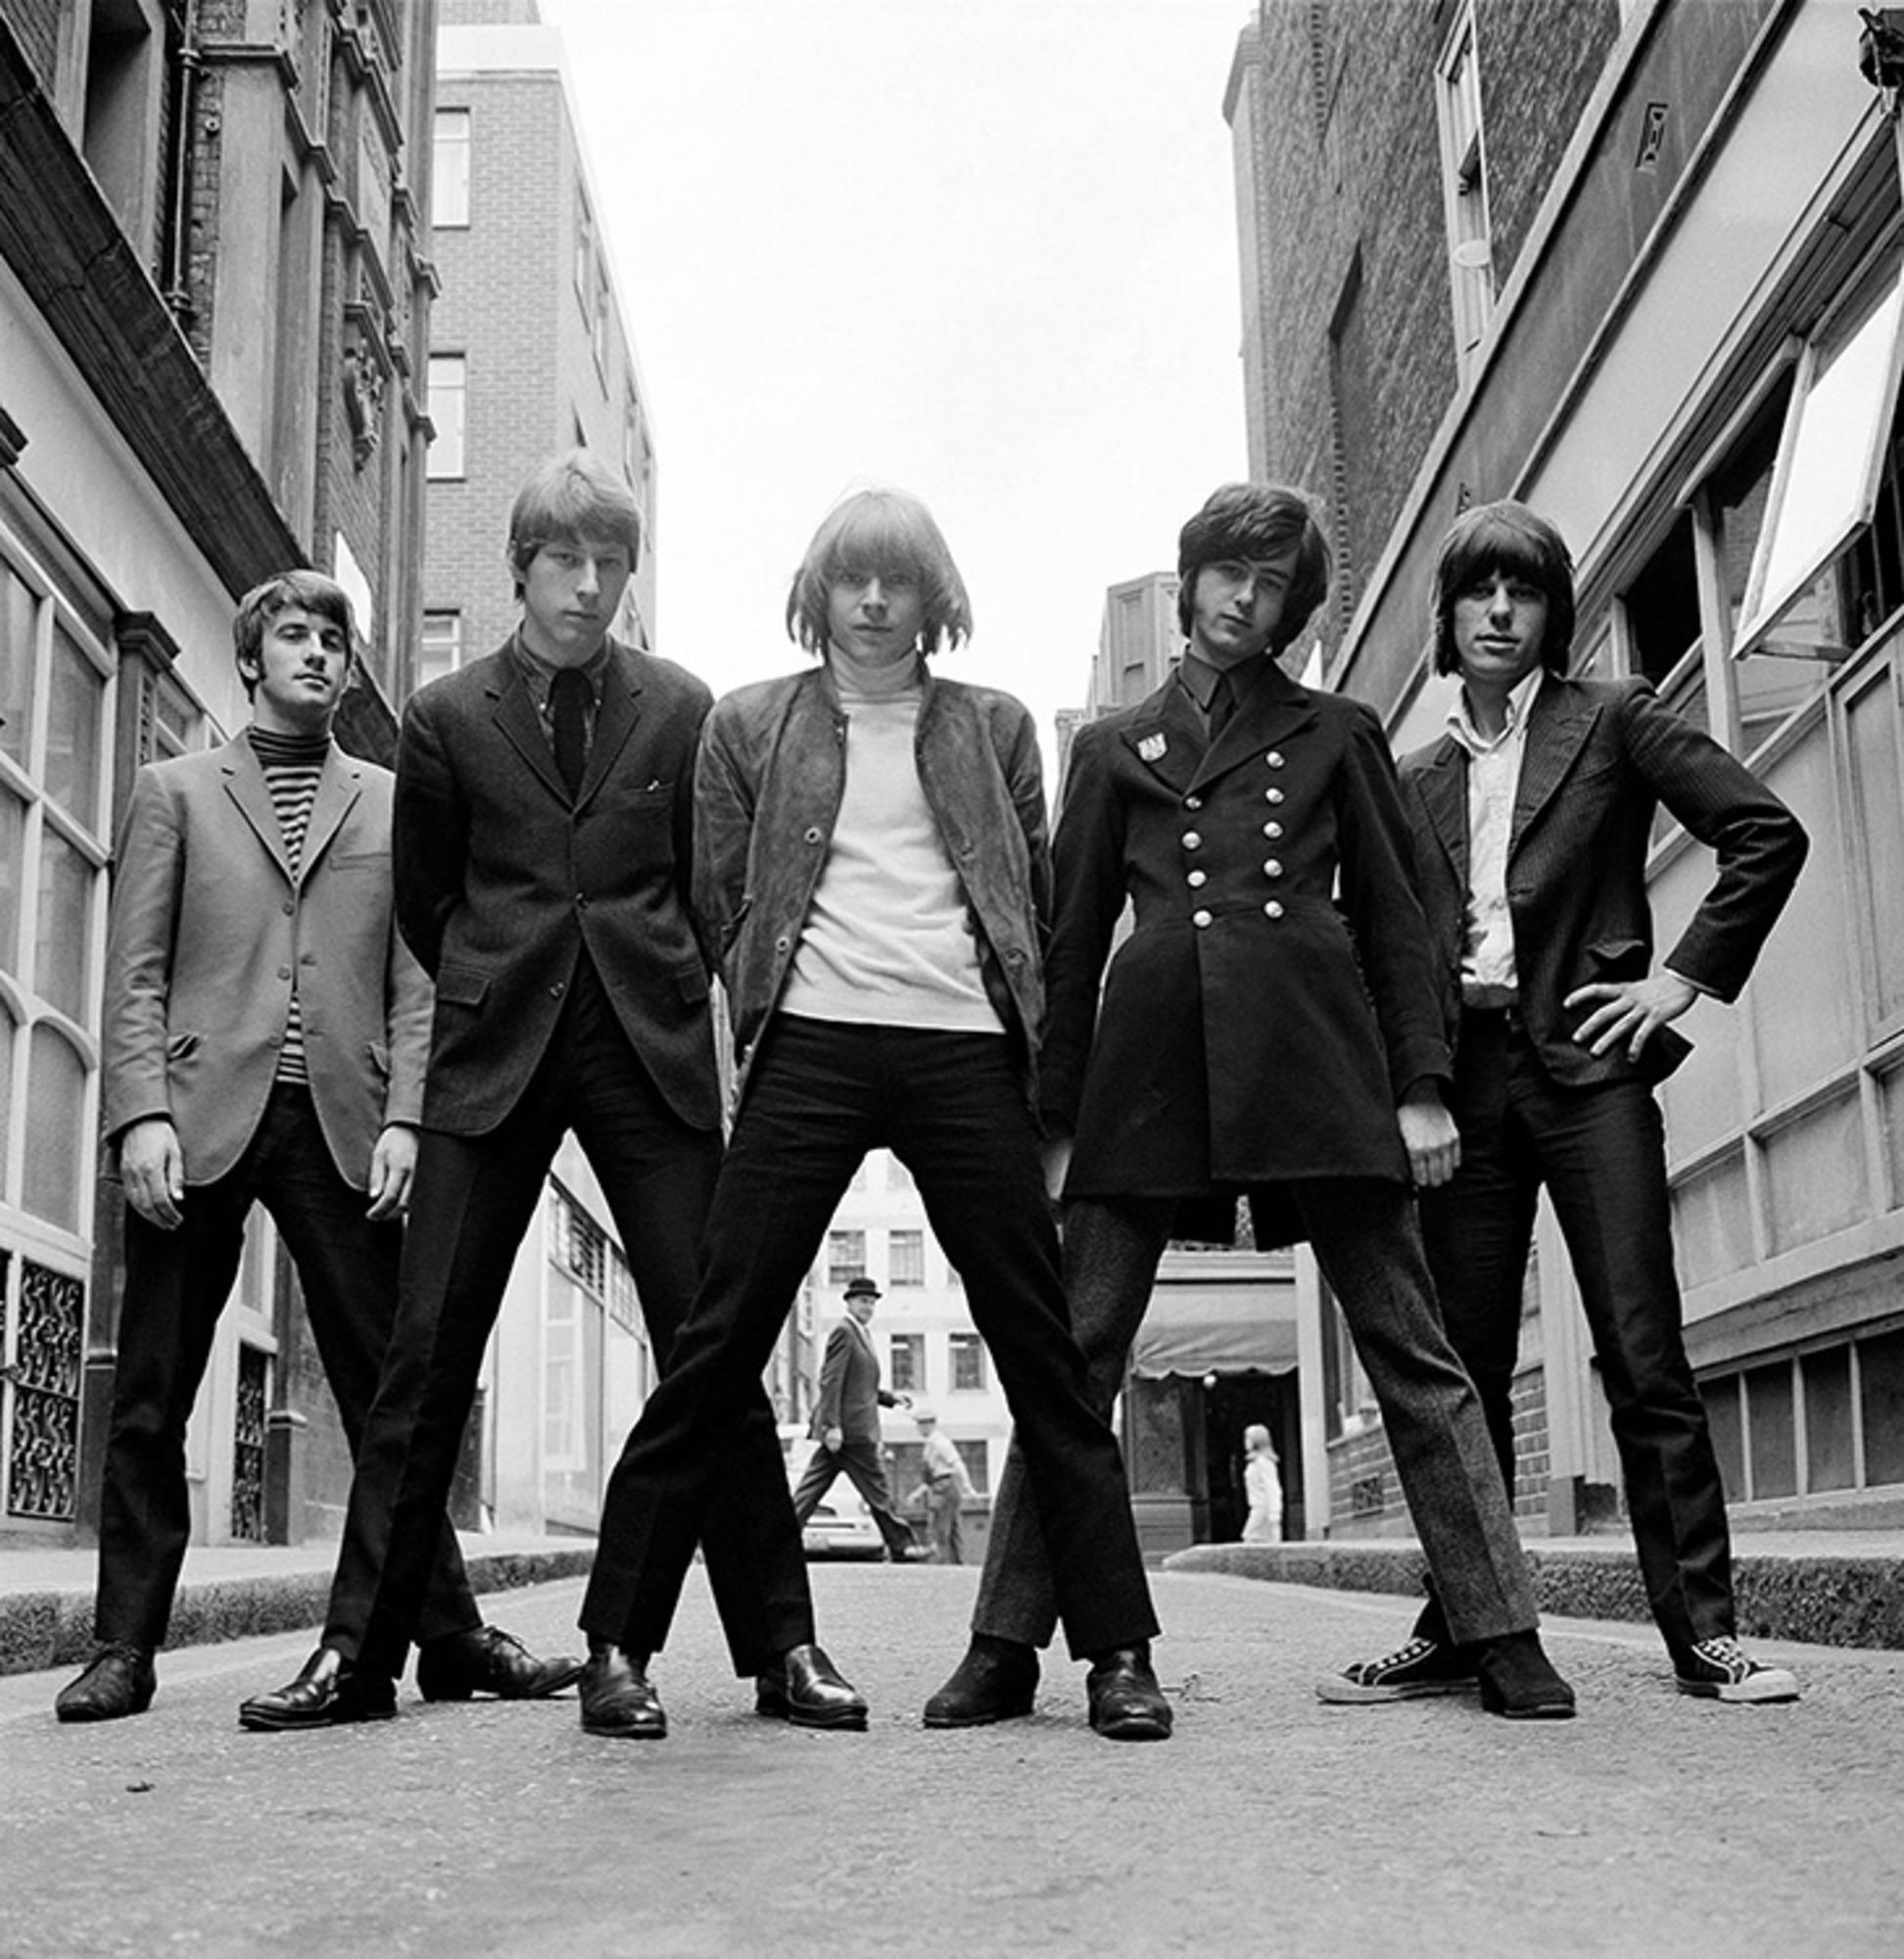 Gelatine-Silber, signiert und nummeriert

Die britische Band The Yardbirds, fotografiert im Ormond Yard, London, 1965.

Verfügbare Größen:
16" x 20" Auflage von 50
20" x 24" Auflage von 50
30" x 40" Auflage von 25
50" x 53" Auflage von 24